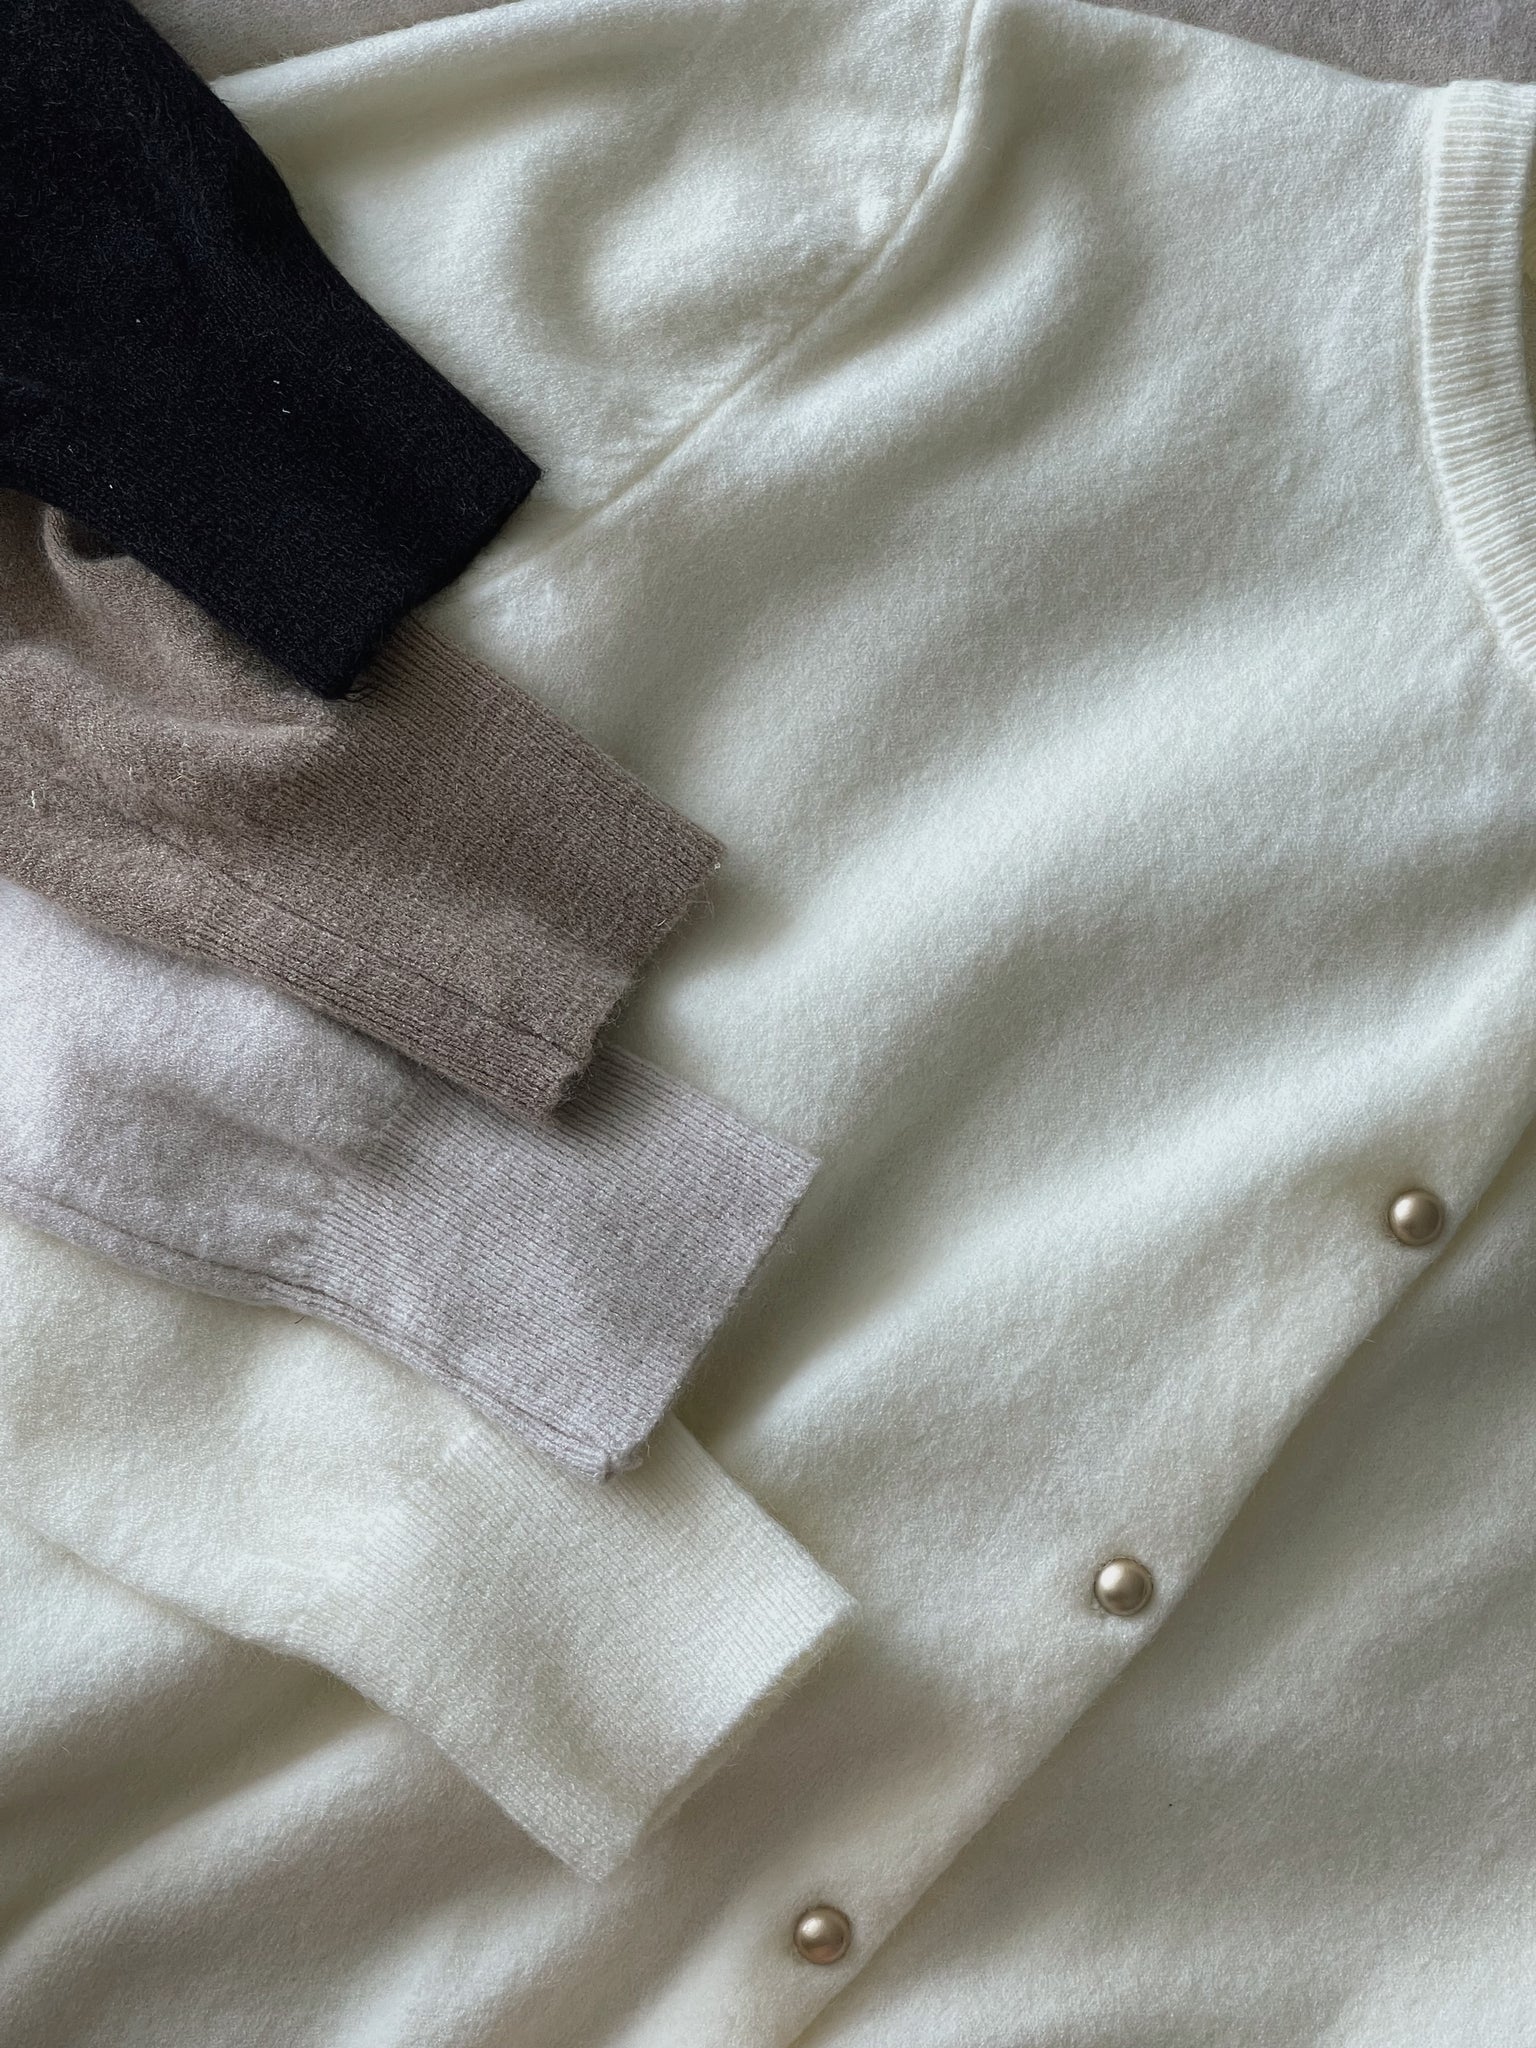 Soft Cloud Knit Cardigan / 软糯小金扣针织衫